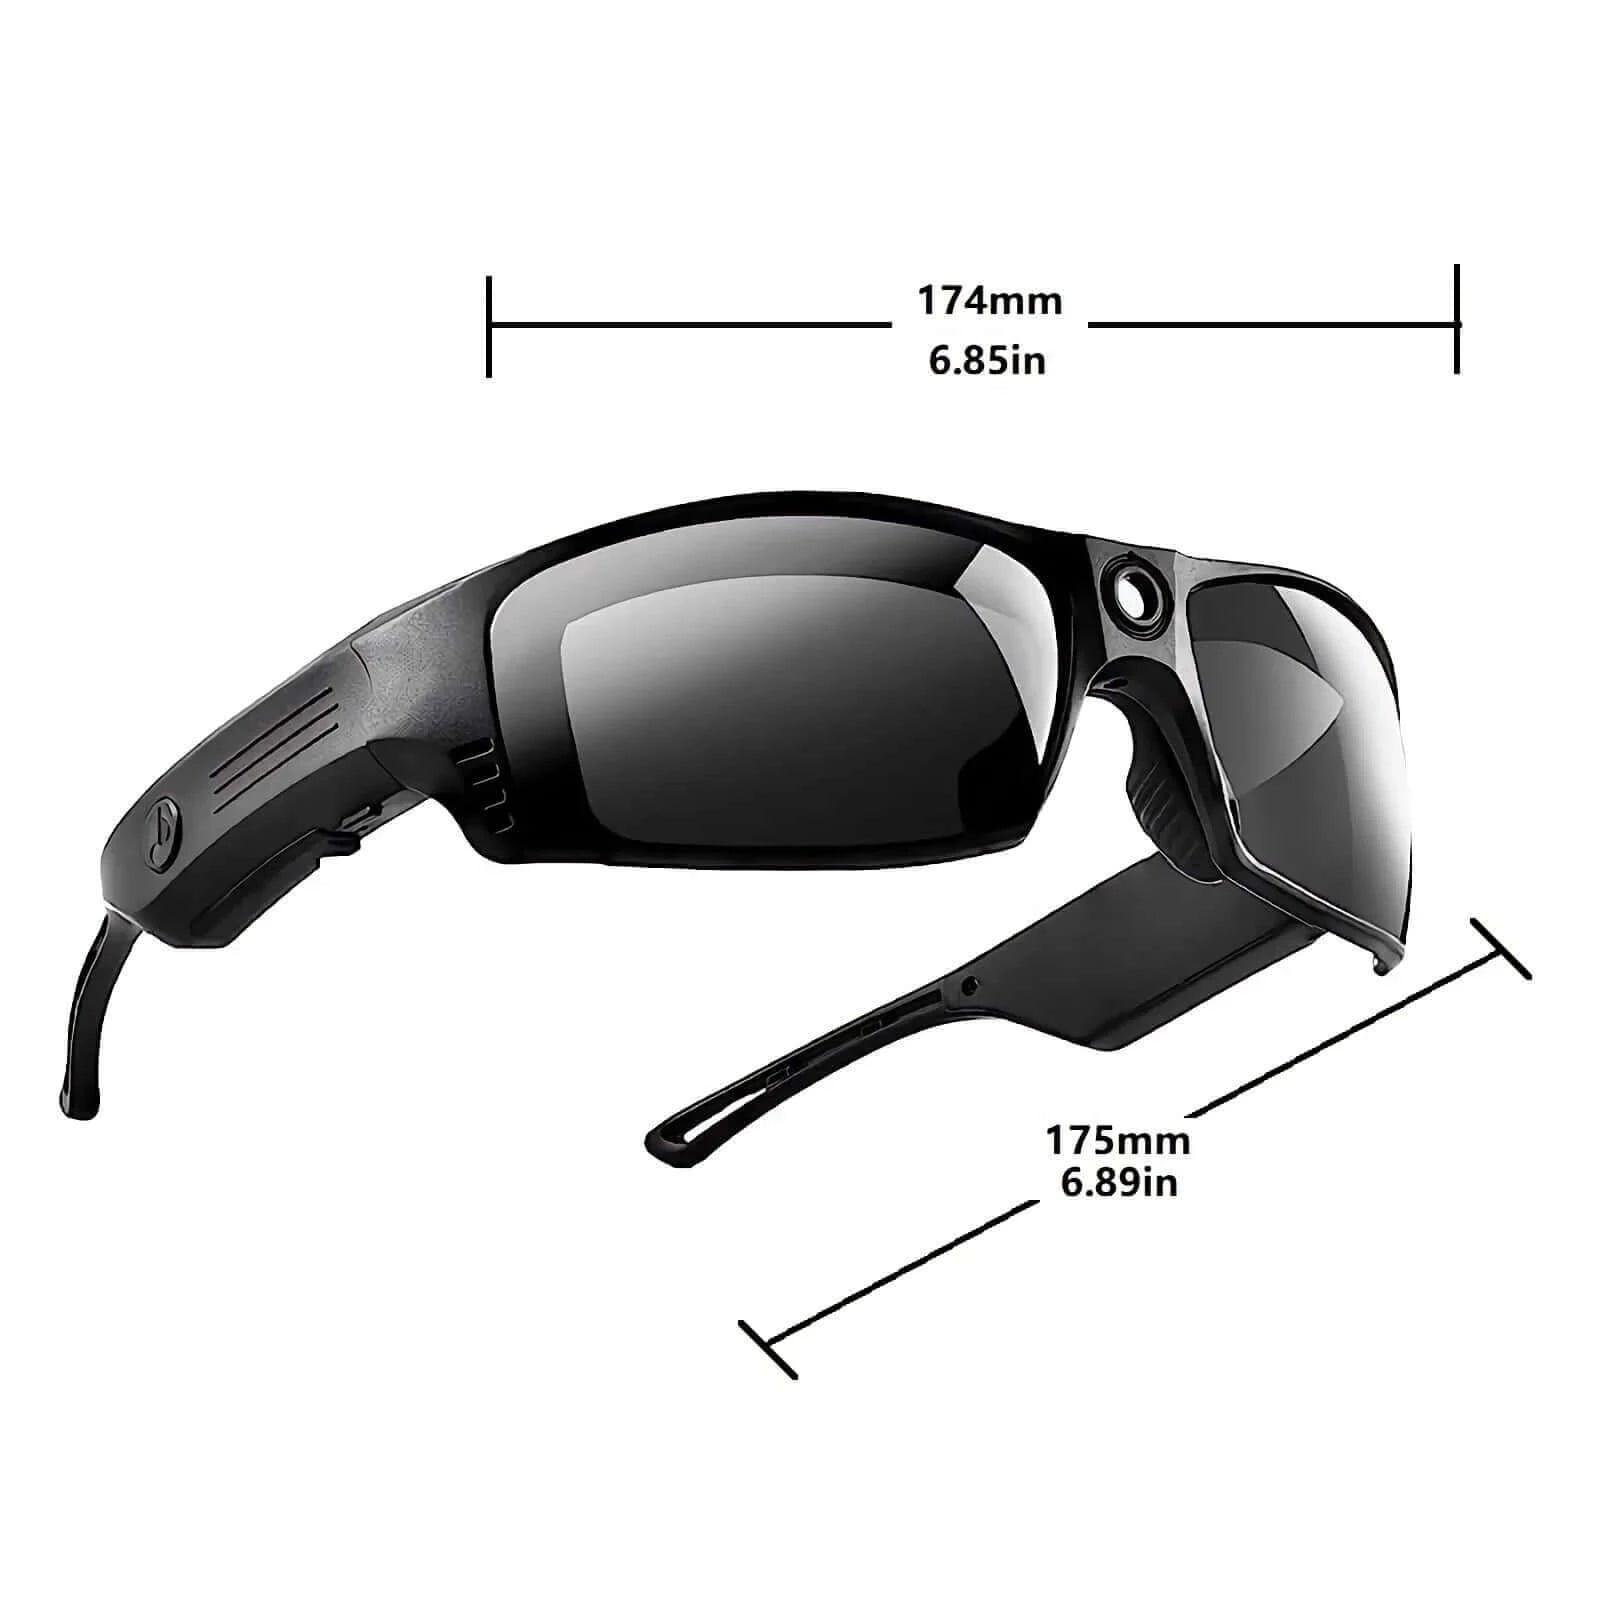 1080P Mini Camera Video Glasses Recording Sport Sunglasses With